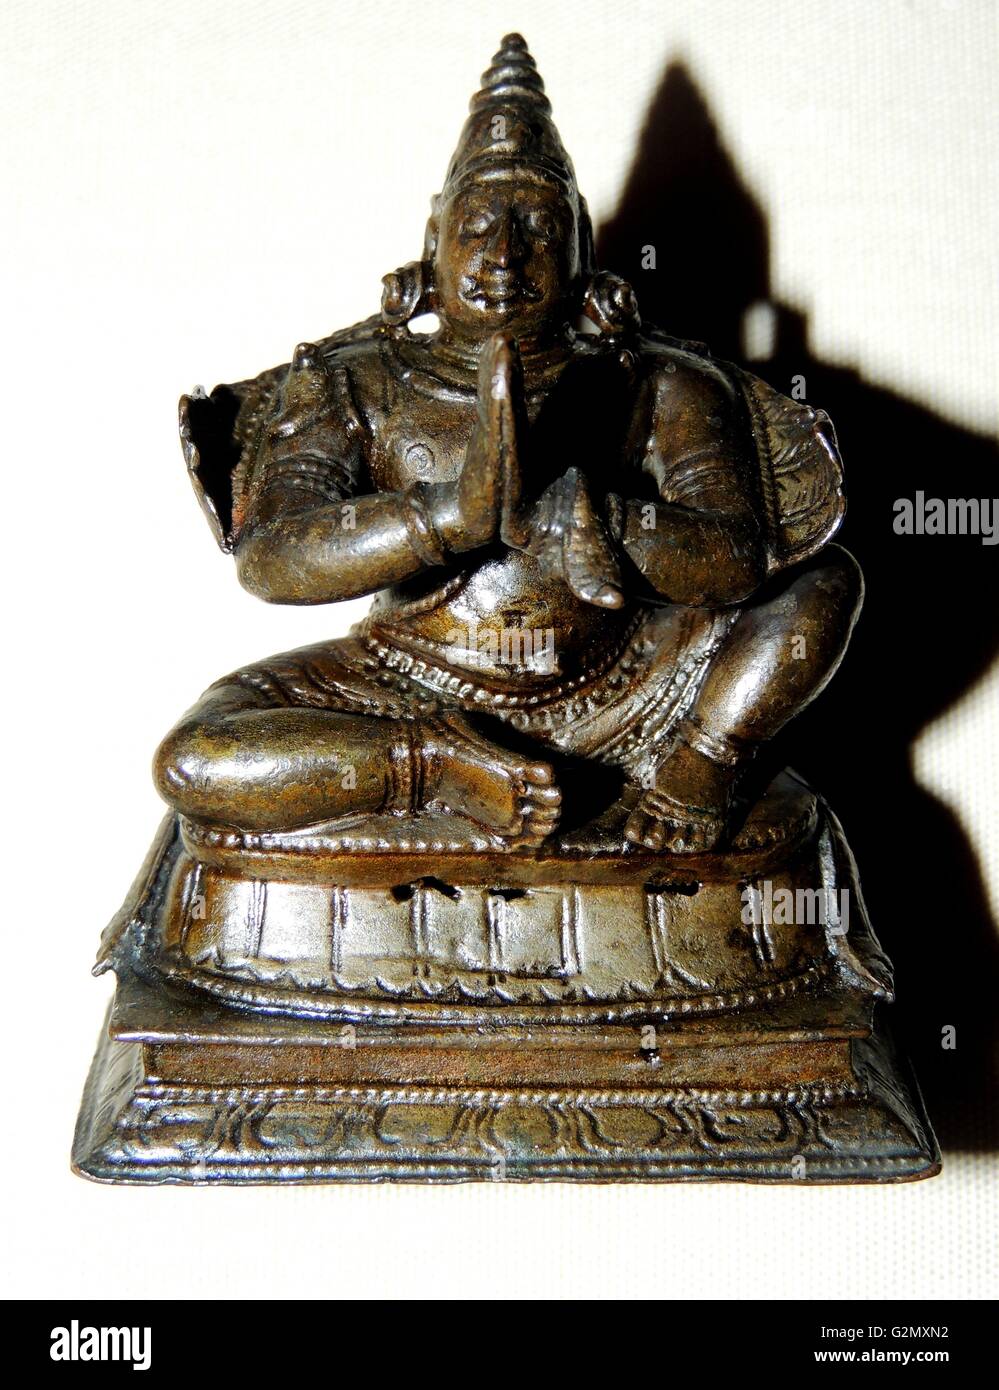 Garuda, mi-homme mi-oiseau est une figure secondaire dans la légende de Vishnu. Sculpture en alliage de cuivre, de l'Inde du Sud, 17e siècle. Banque D'Images